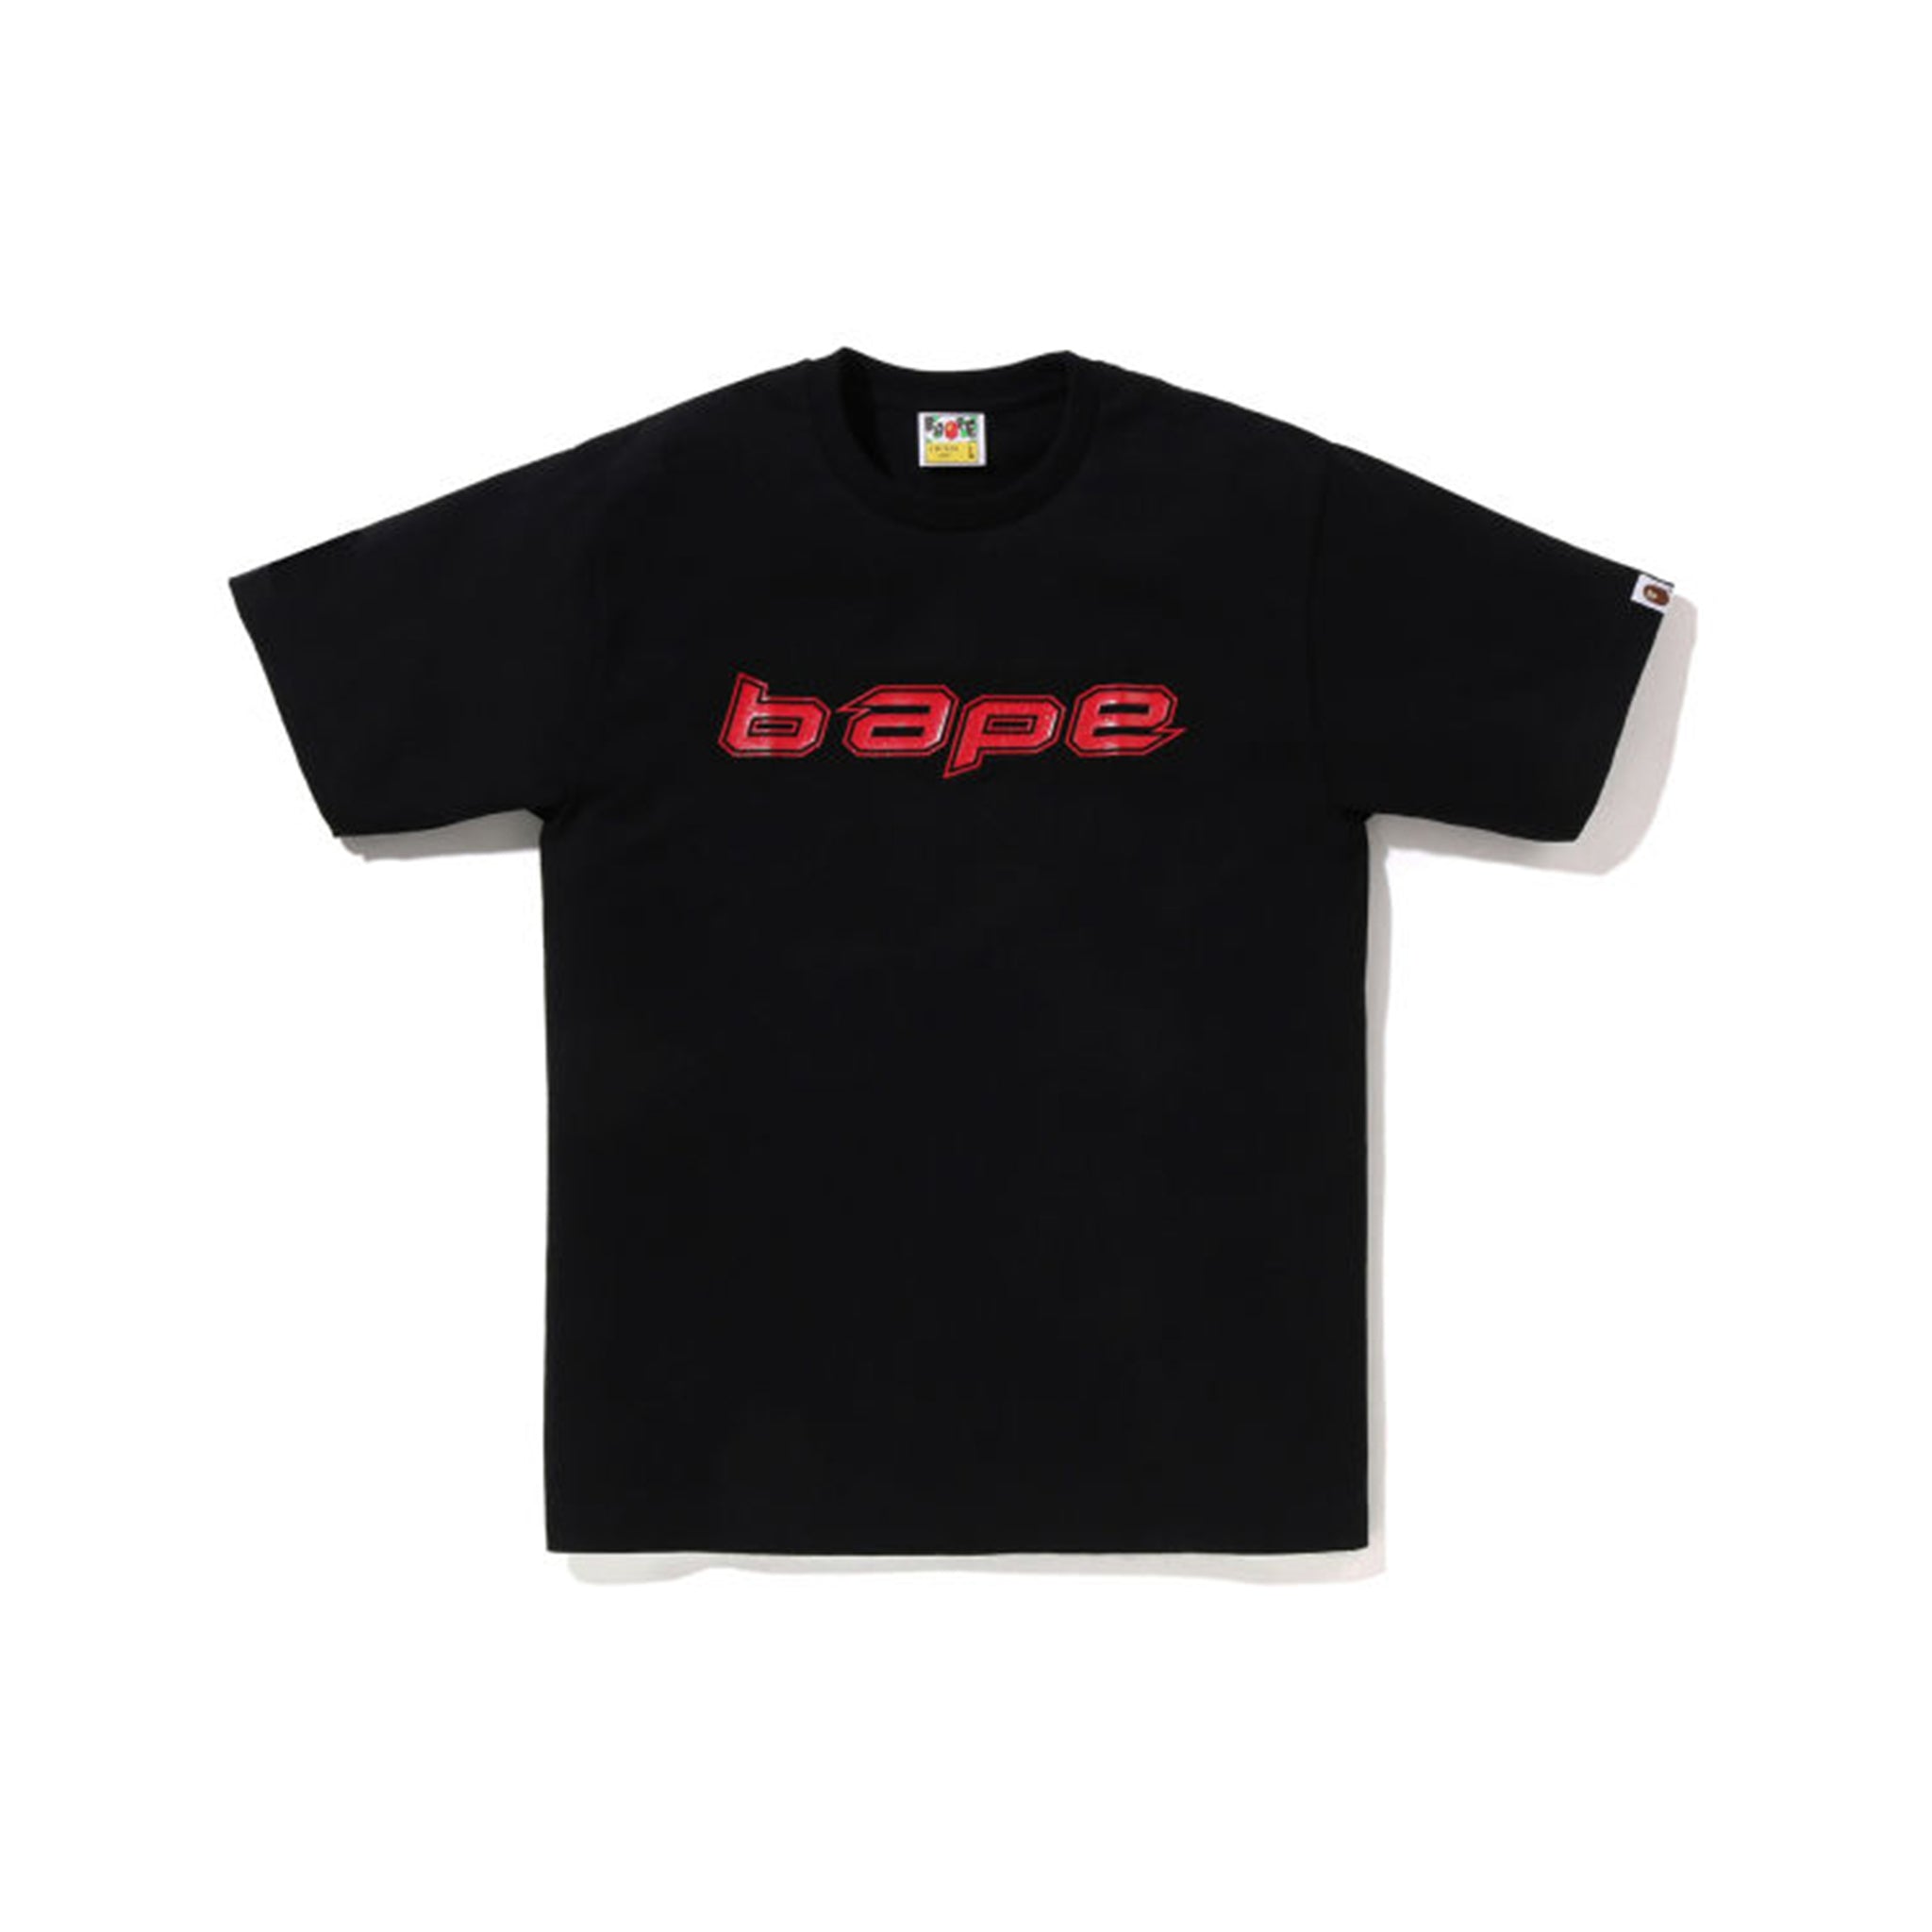 Bape – Common Hype